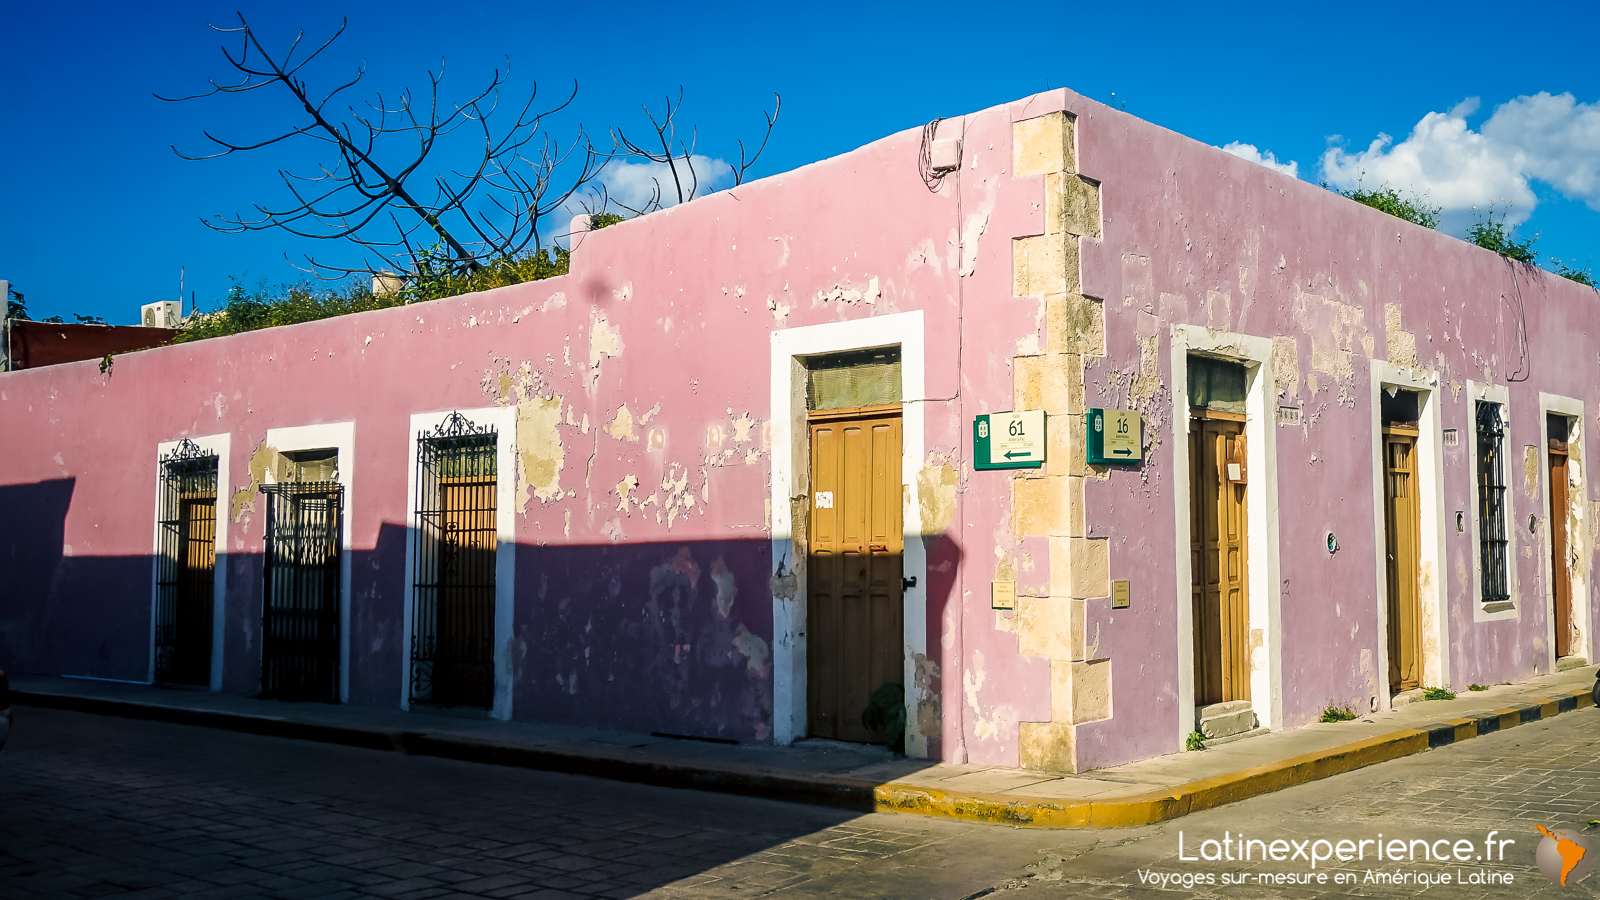 Mexique - Yucatan - maison coloré - Campeche - Latinexperience voyages